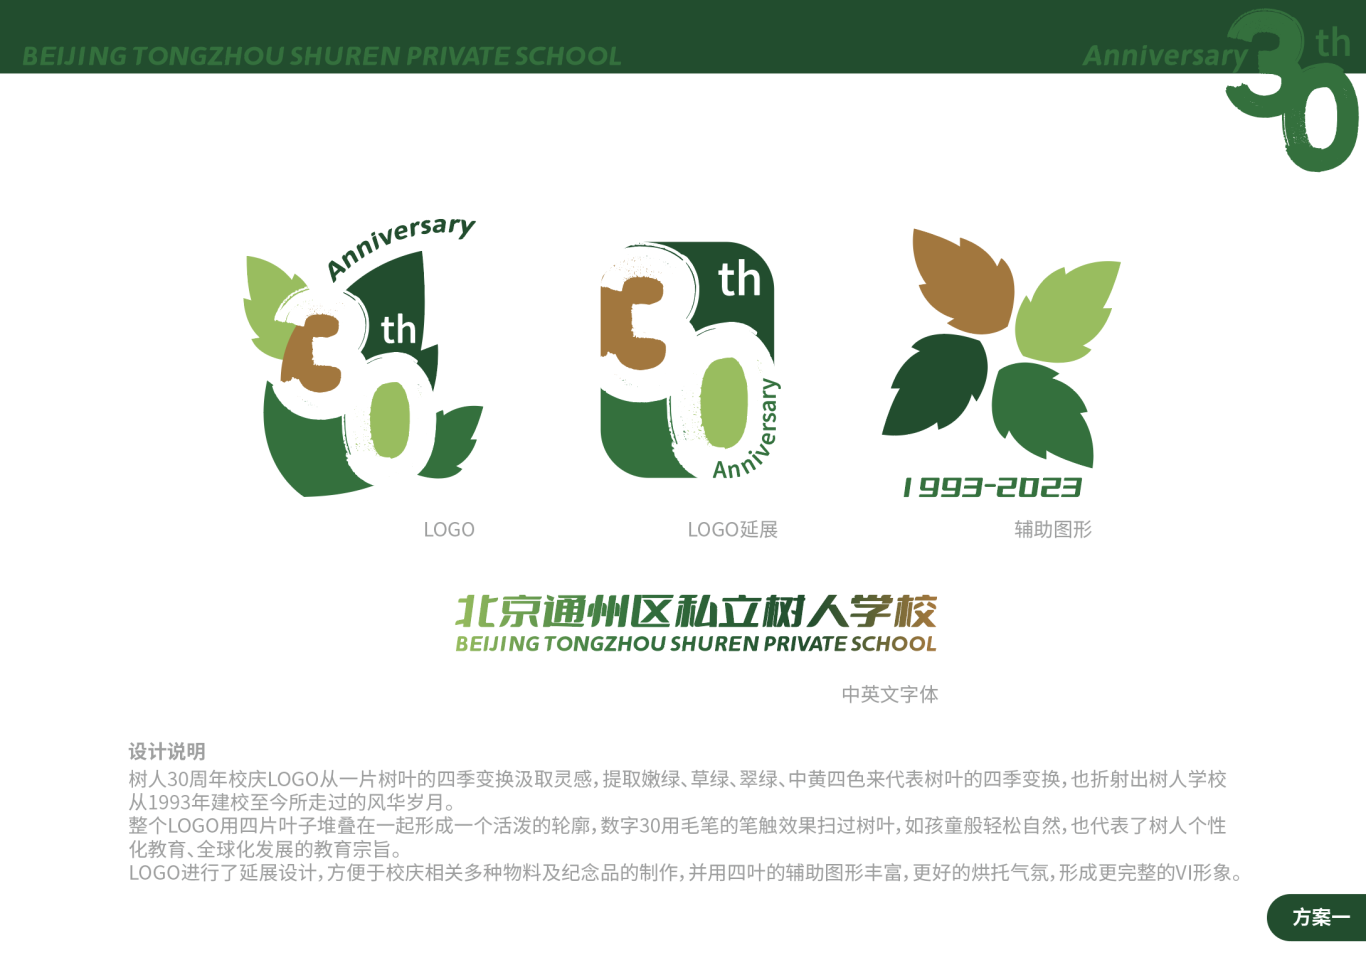 北京通州区私立树人学校30周年校庆logo图0